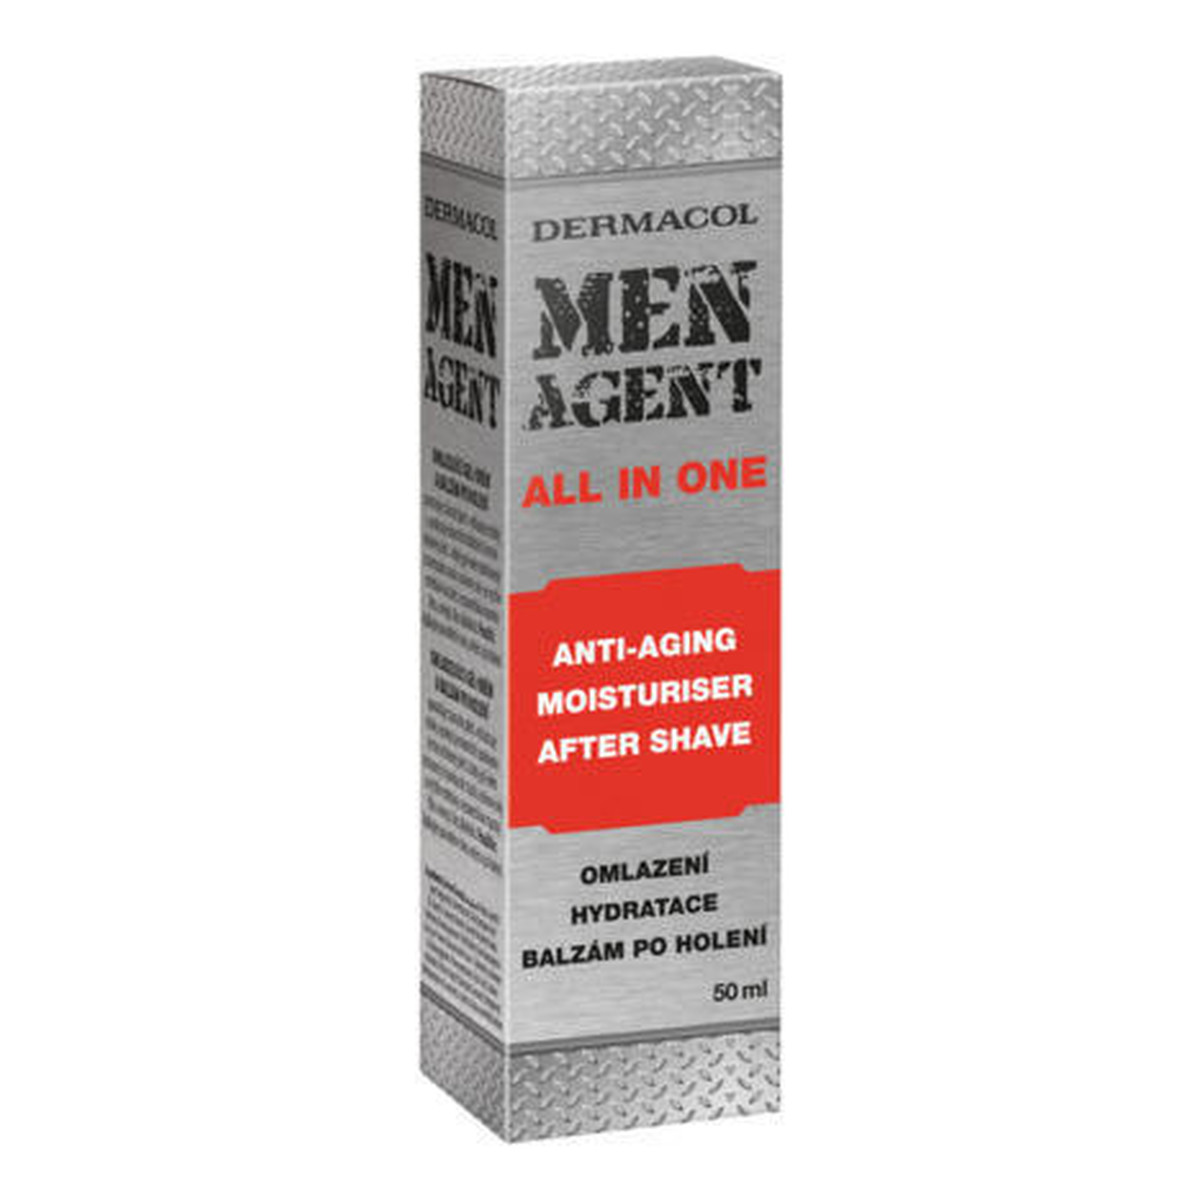 Dermacol MEN AGENT All In One przeciwstarzeniowy nawilżający balsam po goleniu 50ml